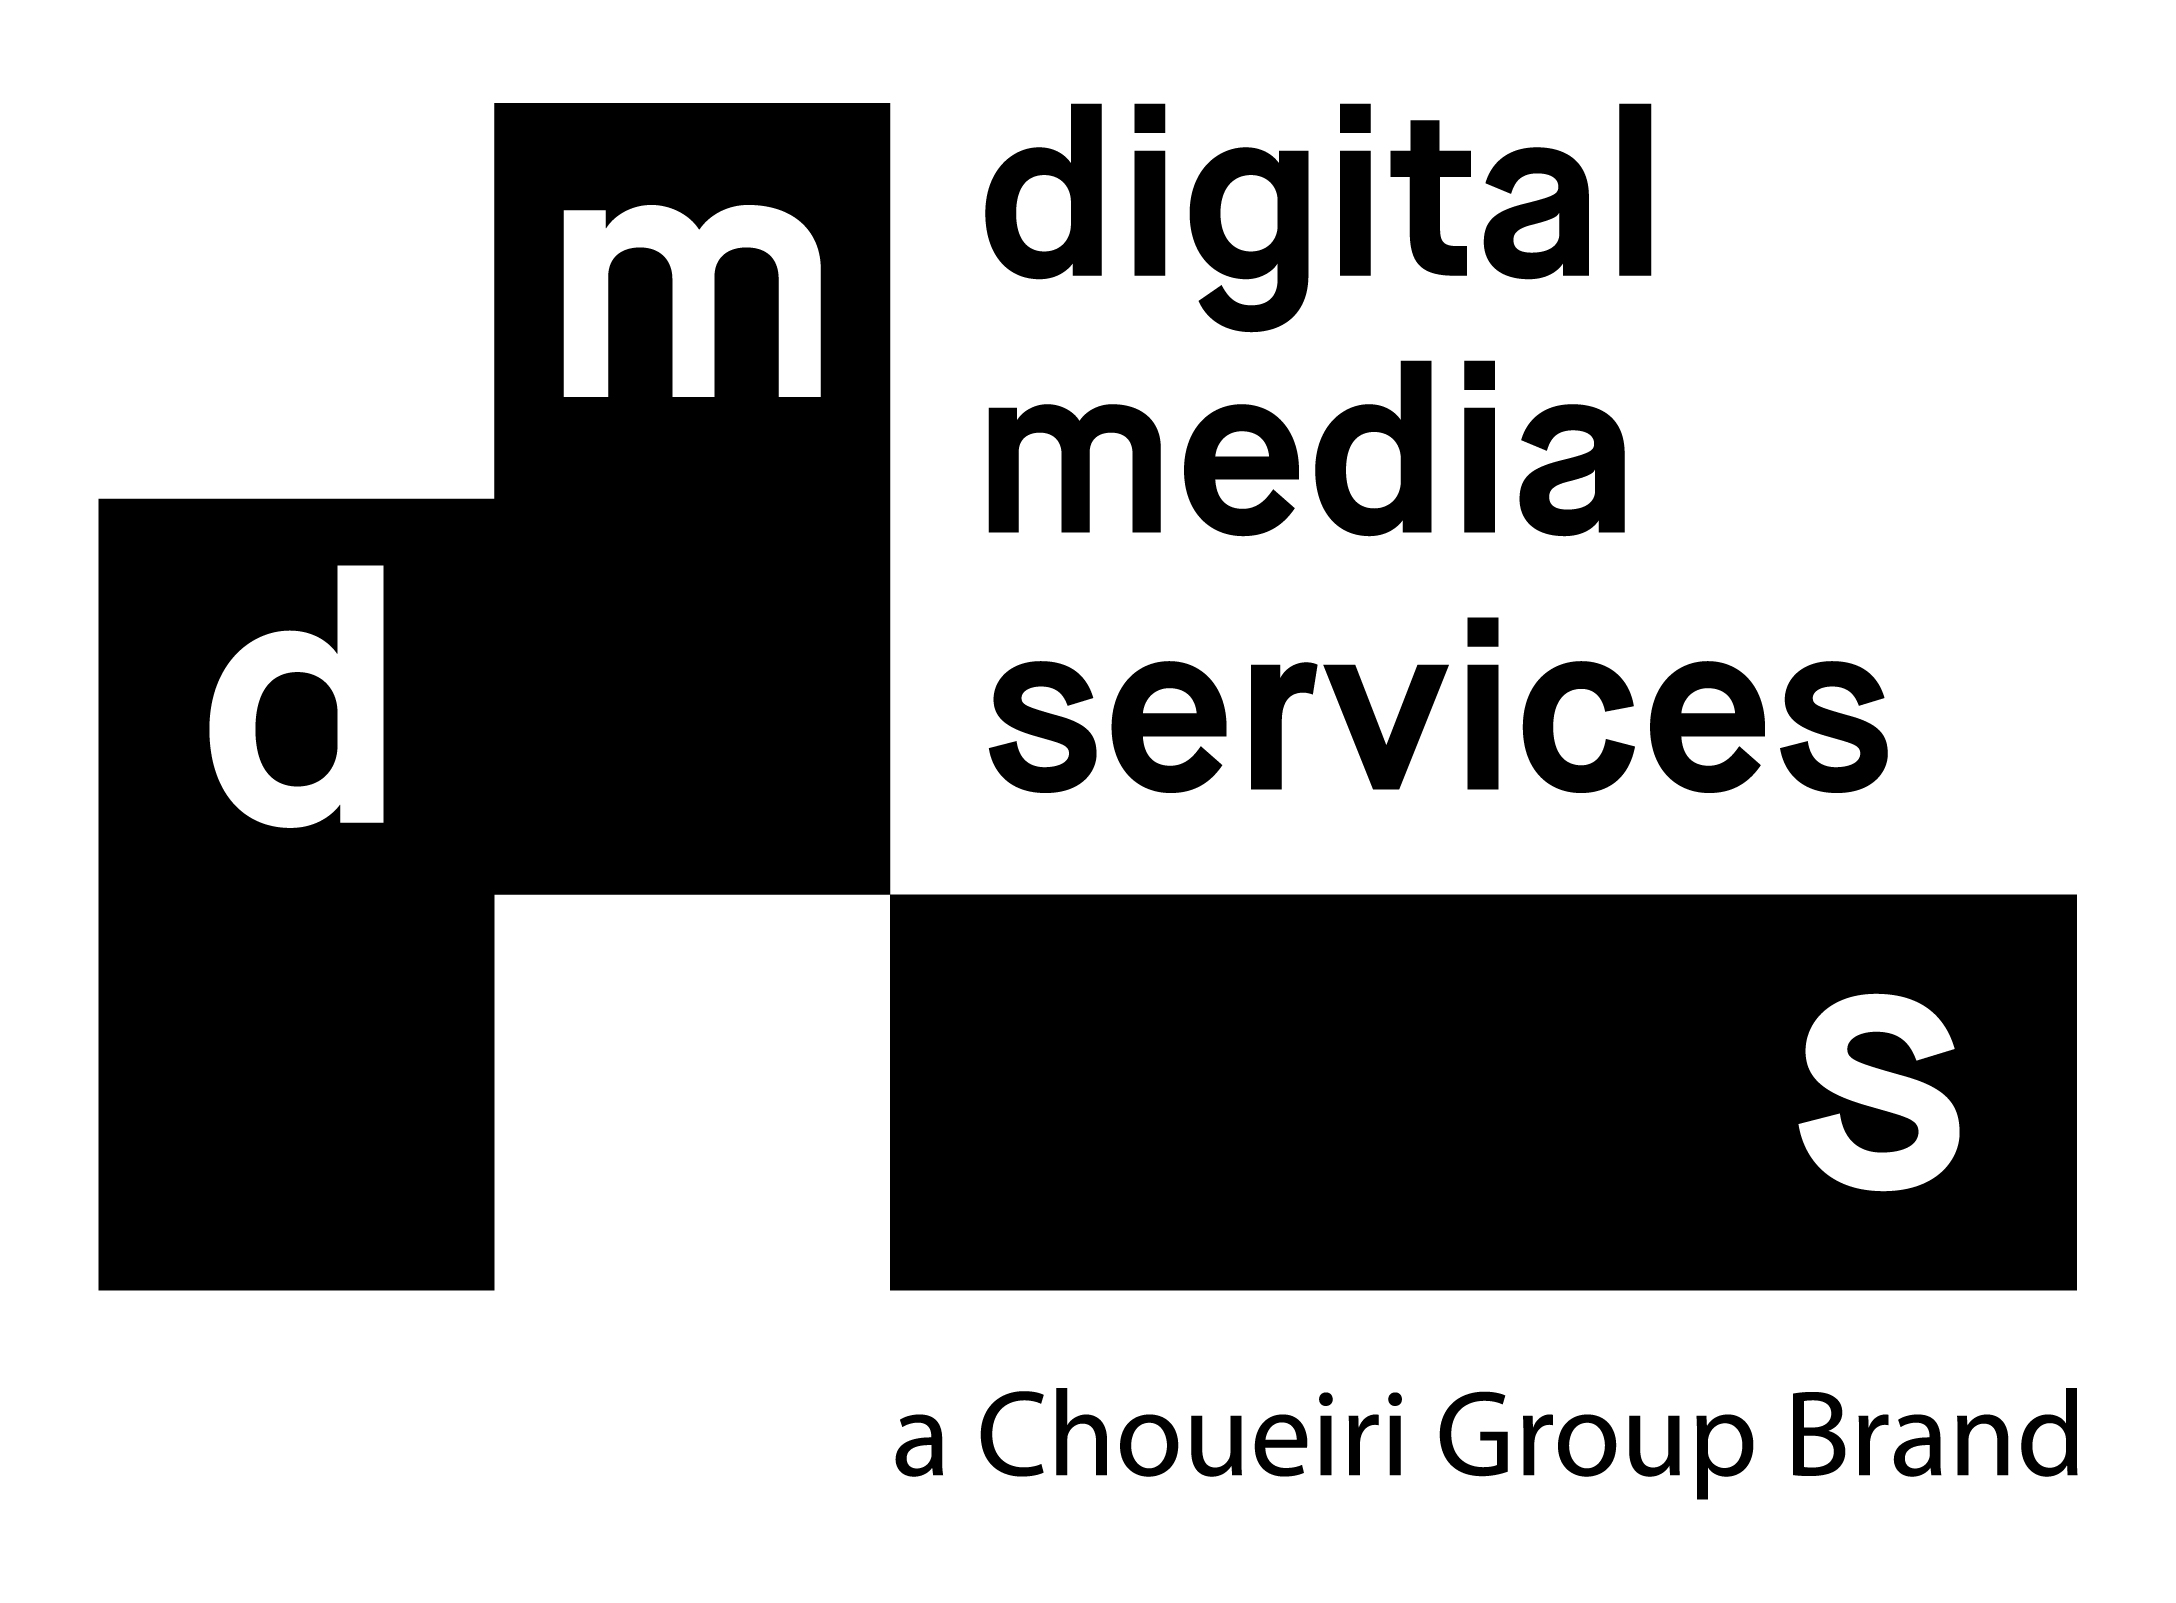 ديجيتال ميديا سيرفيسيز تعلن عن إطلاق منتجها الجديد لتحسين أداء الإعلان الرقمي ’دي إم إس بيرفورم‘ خلال مؤتمر ستيب لعام 2019